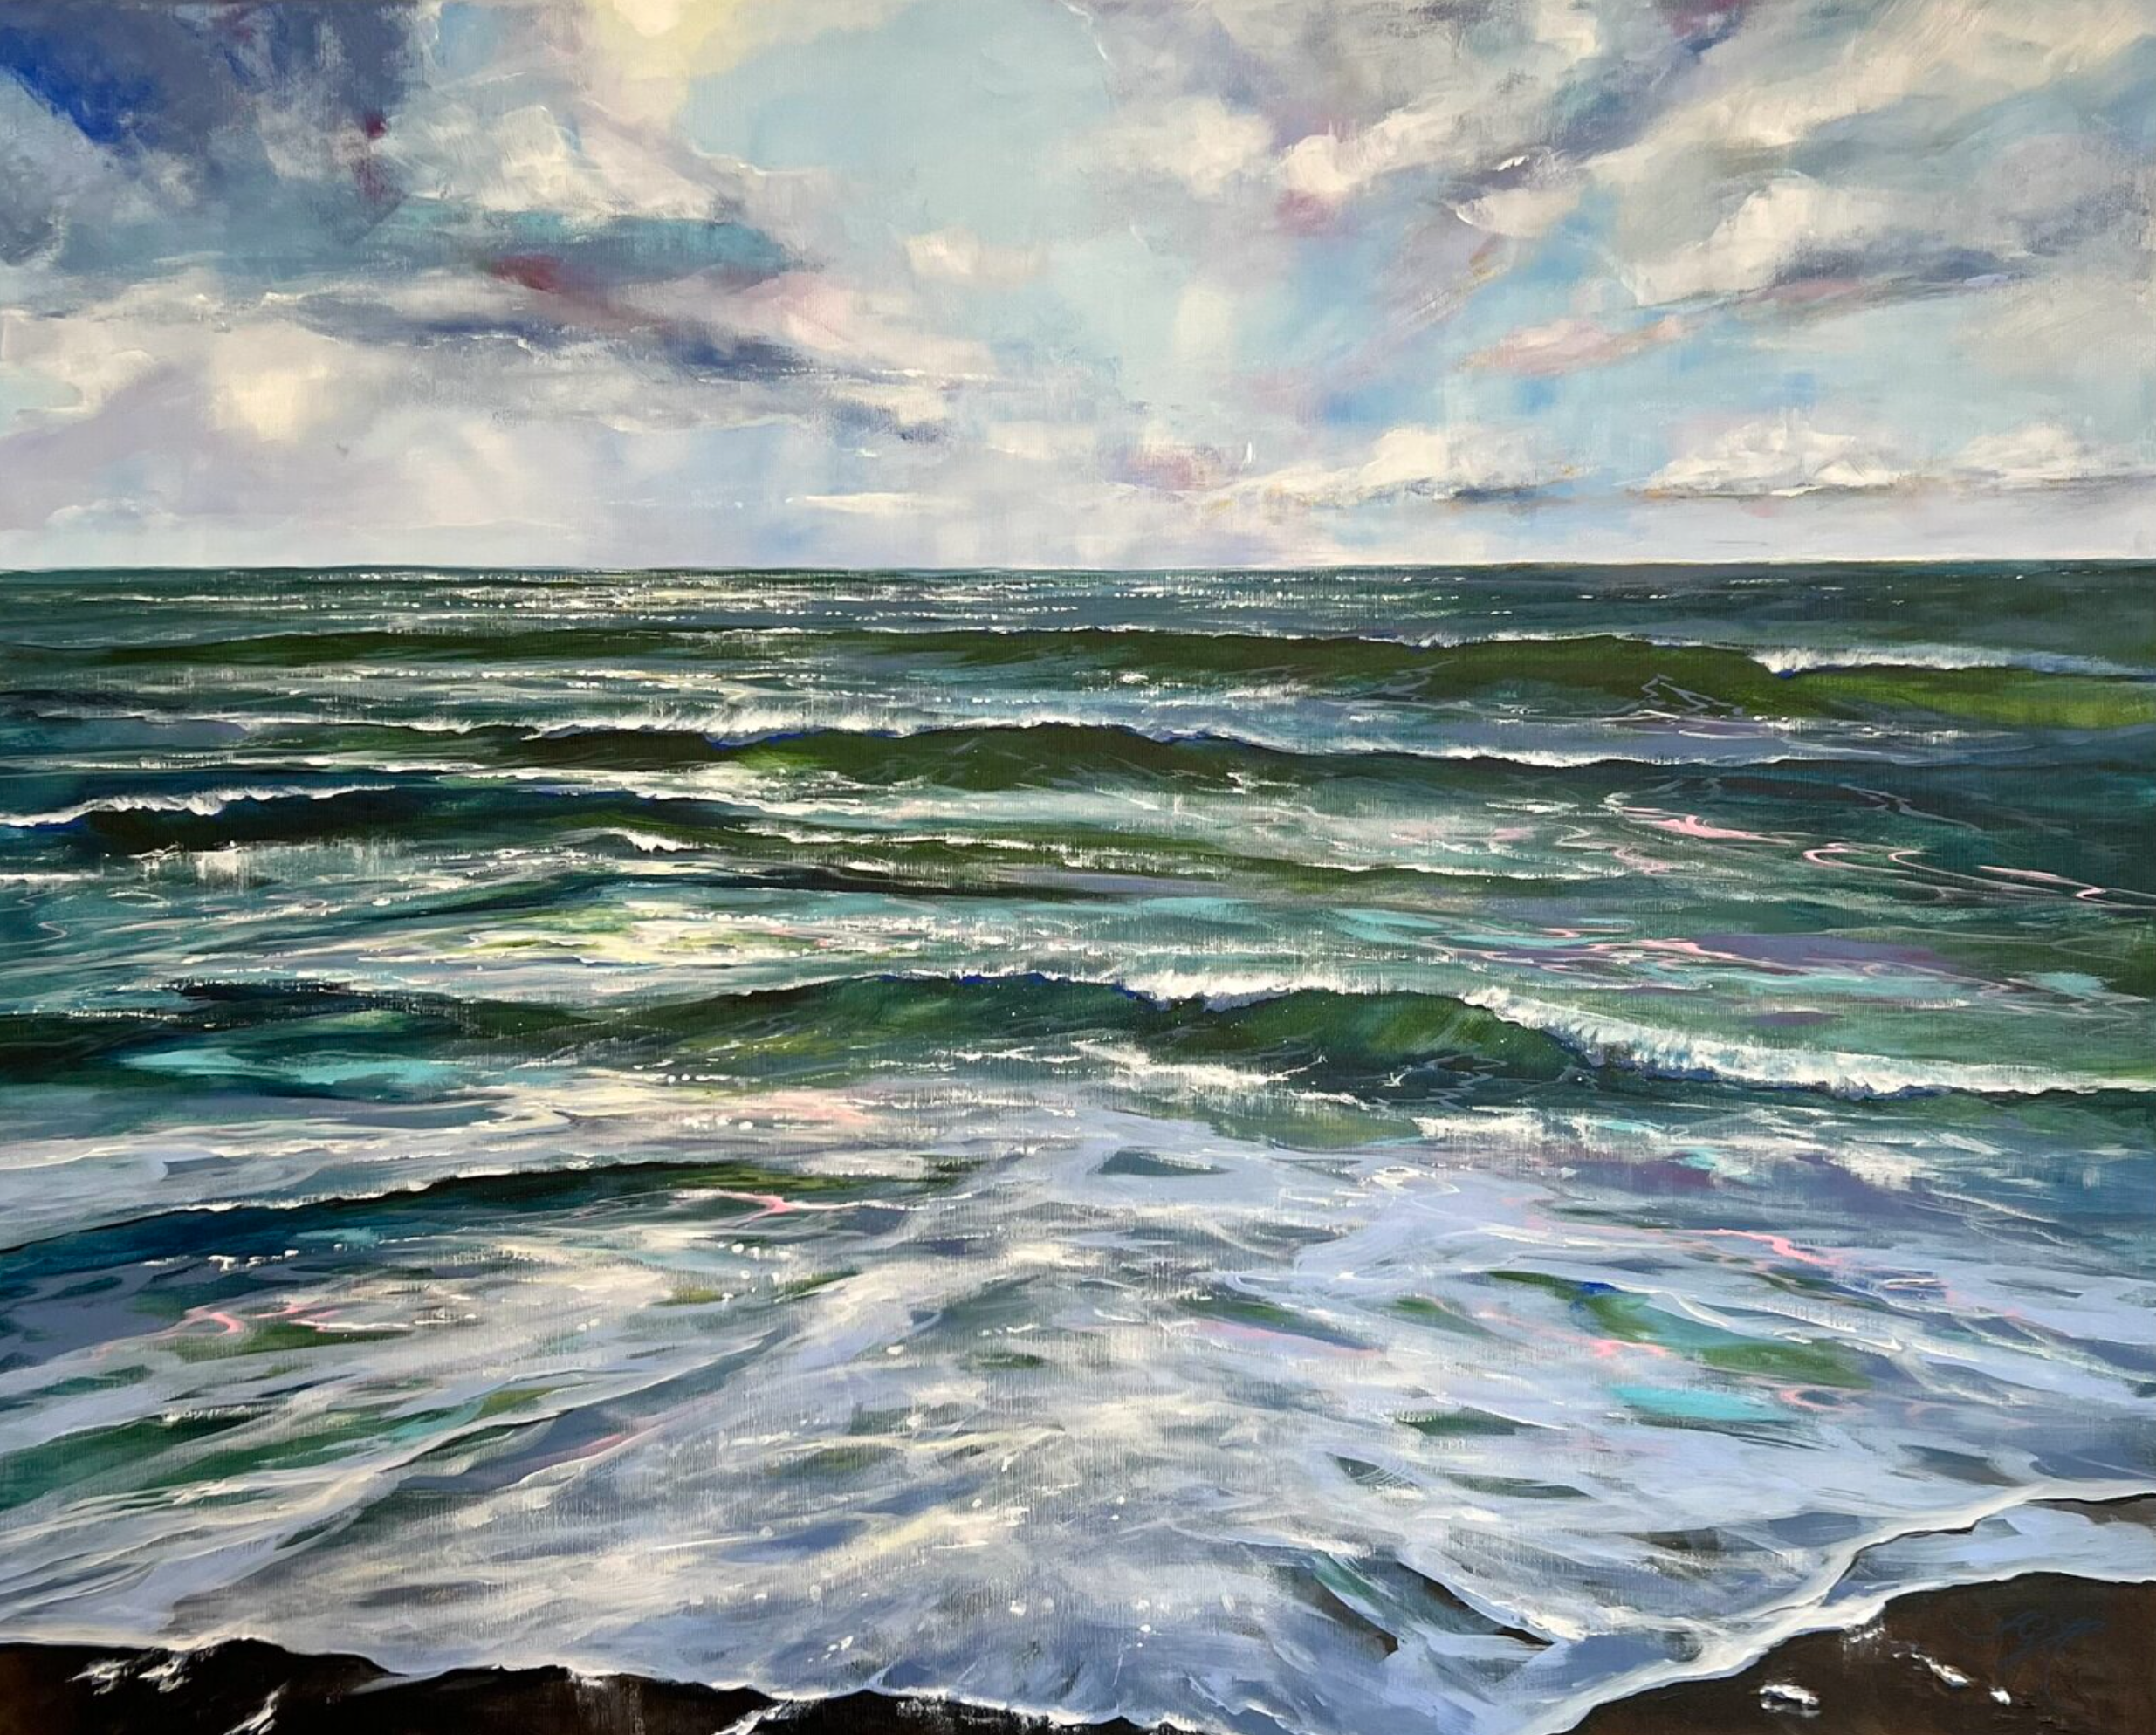 El cuadro "Oceanlove 7" de Sandra Gebhardt-Hoepfner muestra, el mar, los rayos del sol, la maravillosa nube, el maravilloso color verde claro y azul claro del agua. Los colores son verde claro y verde oscuro, azul oscuro, azul claro, mucho blanco, gris azulado y gris oscuro.